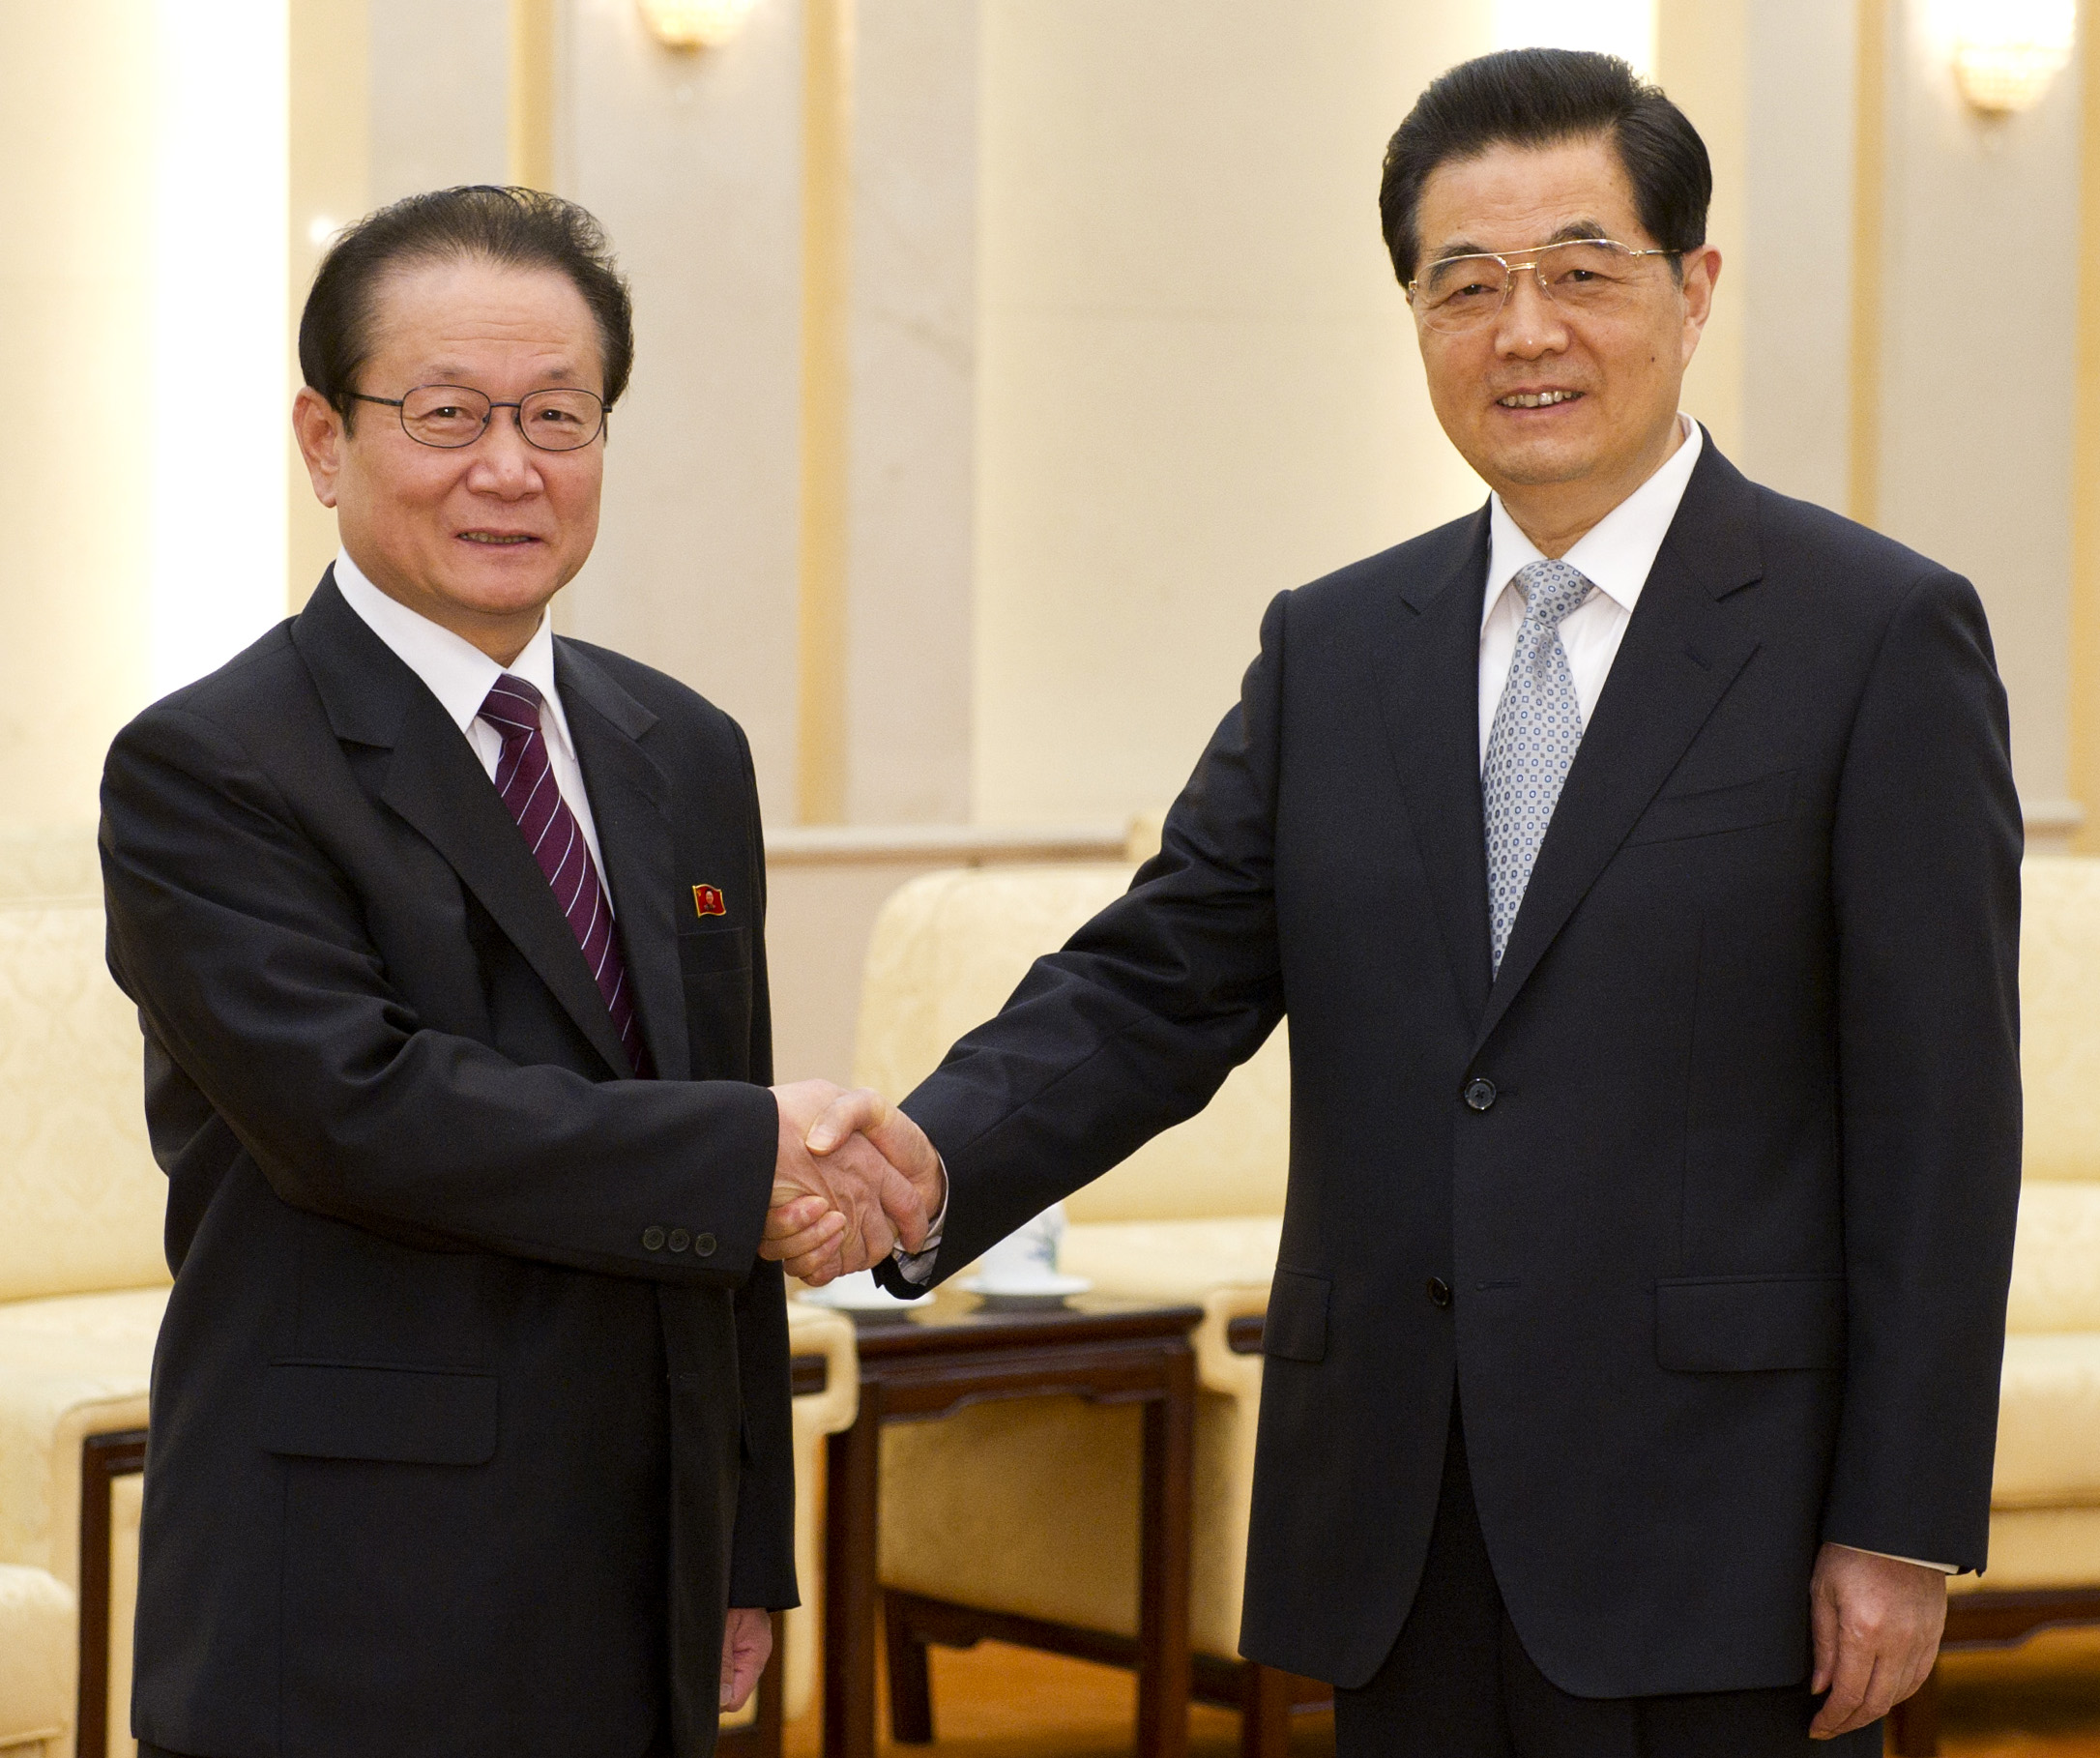 Kinas president Hu Jintao (till höger tillsammans med den nordkoreanska statsmannen Kim Yong-il under mötet i måndags.